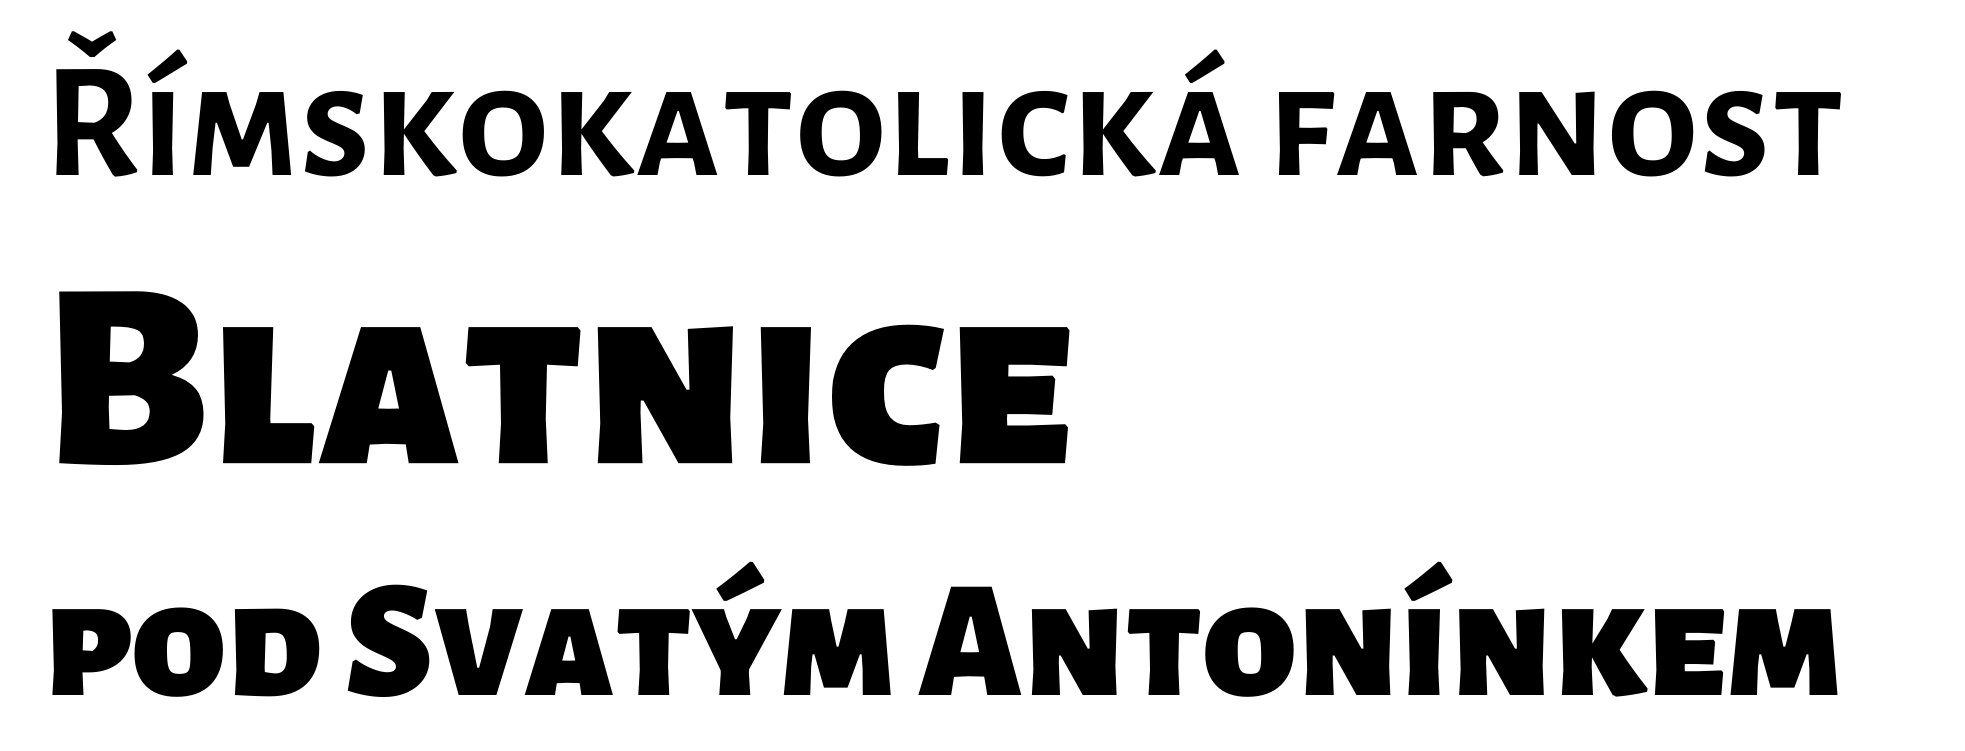 Logo Jak podpořit farnost či Antonínek - Římskokatolická farnost Blatnice pod Svatým Antonínkem